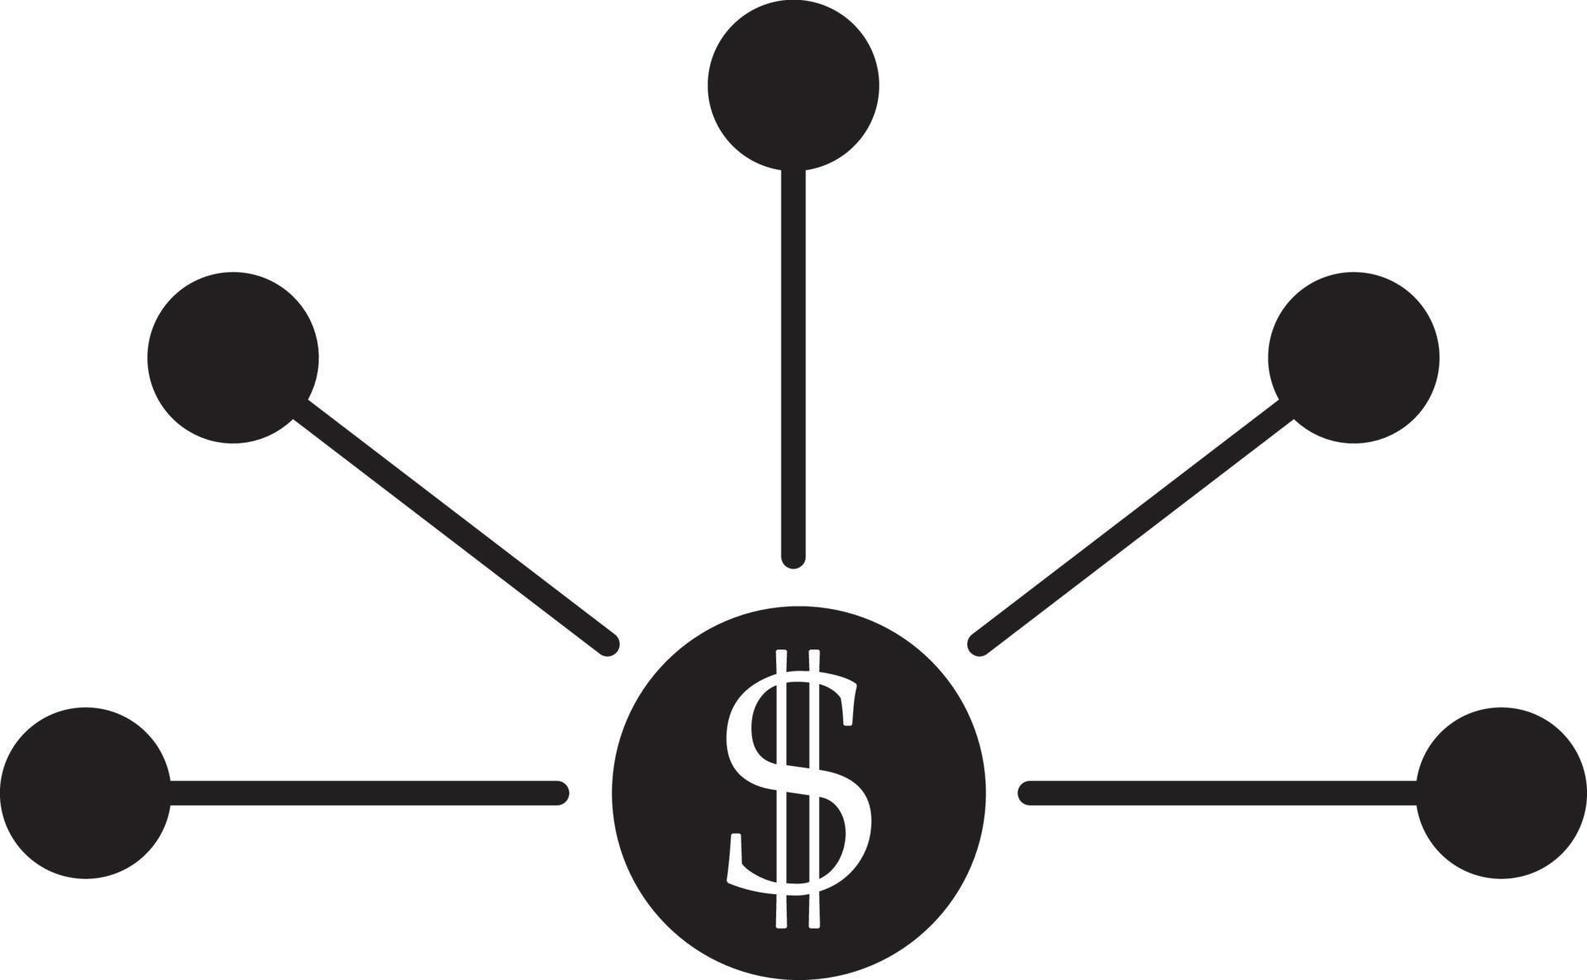 Bank strukturera, företag, ikon. mynt med dollar tecken enkel ikon på vit bakgrund. vektor illustration. - vektor på vit bakgrund